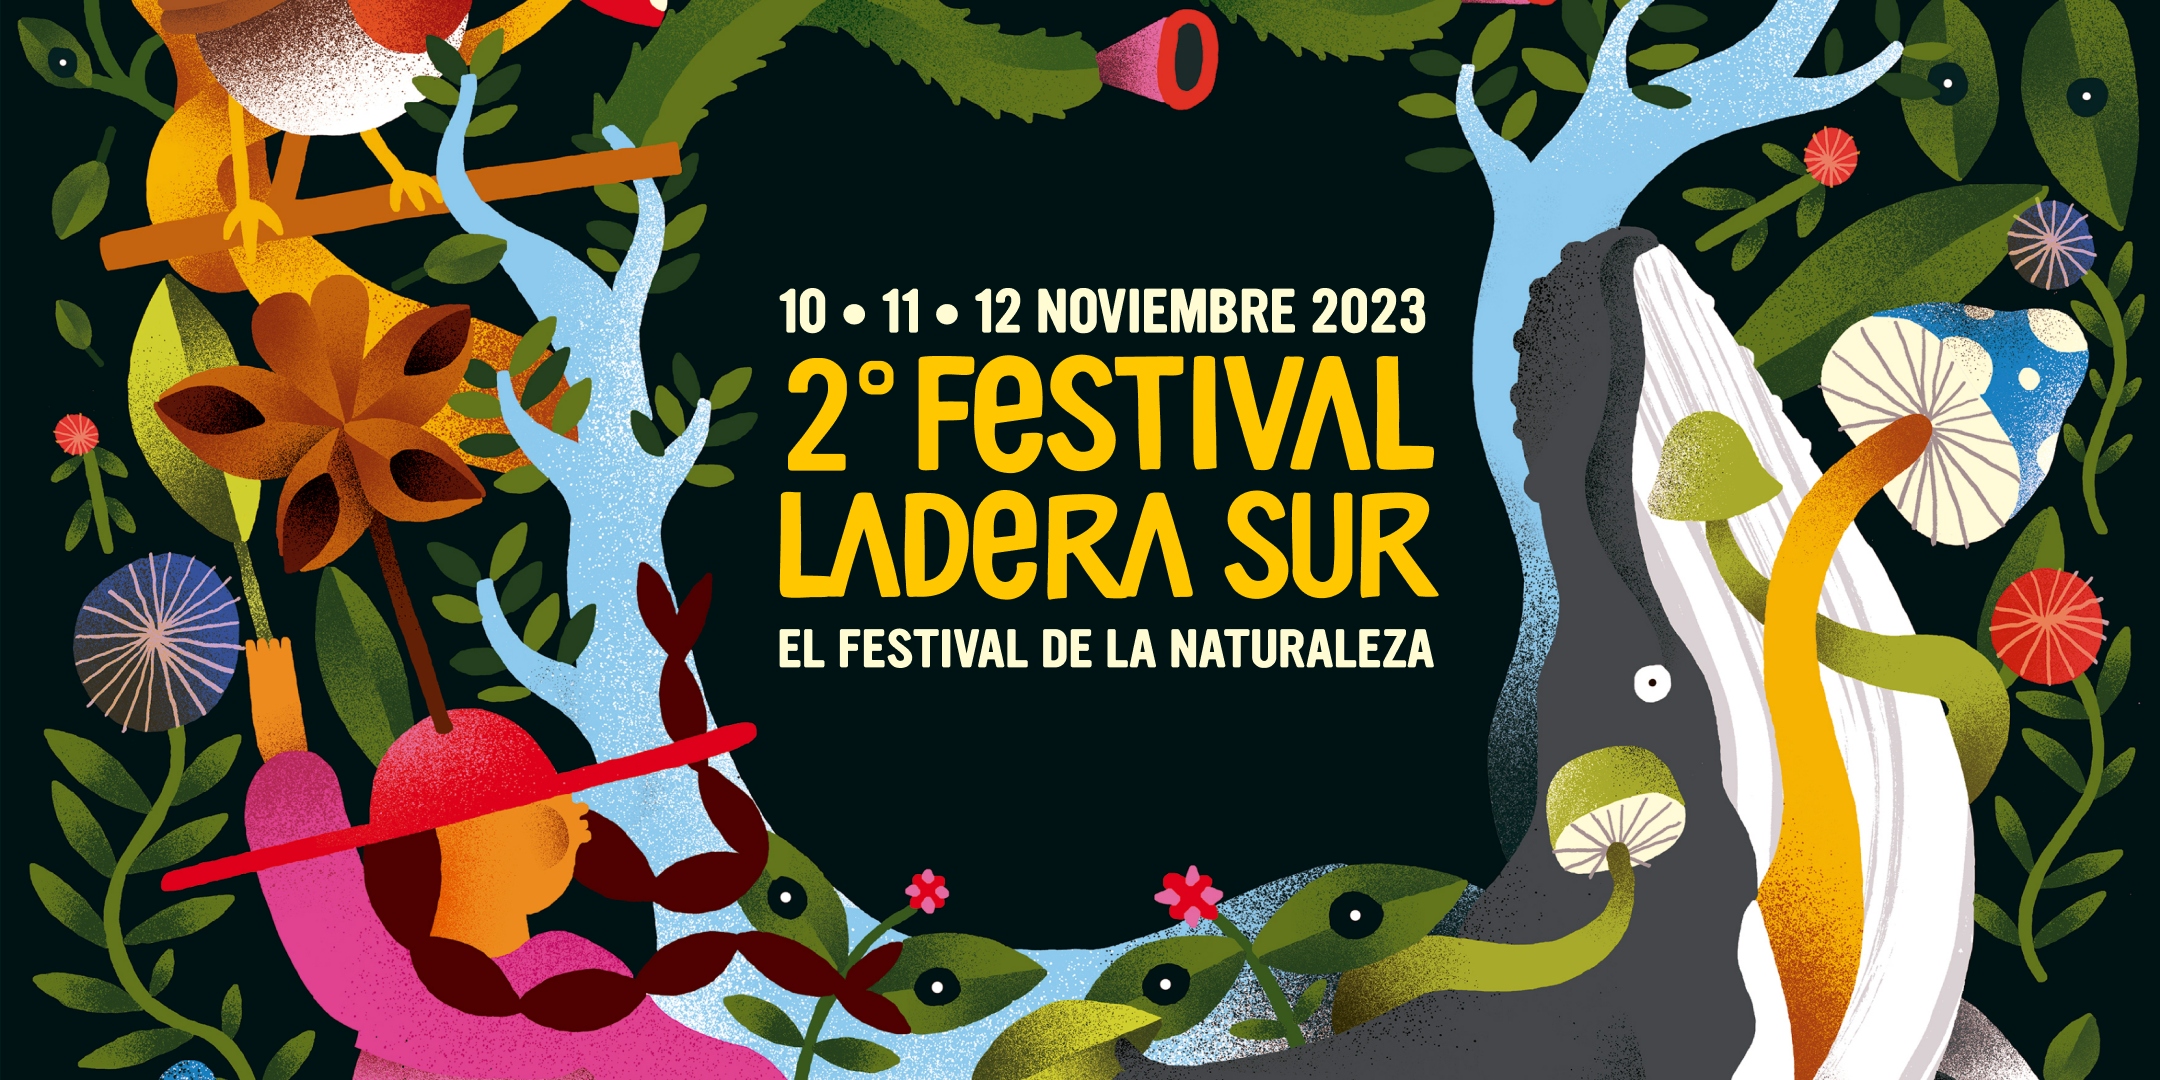 ¿Quieres ser parte de la 2da versión del Festival Ladera Sur? Este mes se abrirán convocatorias